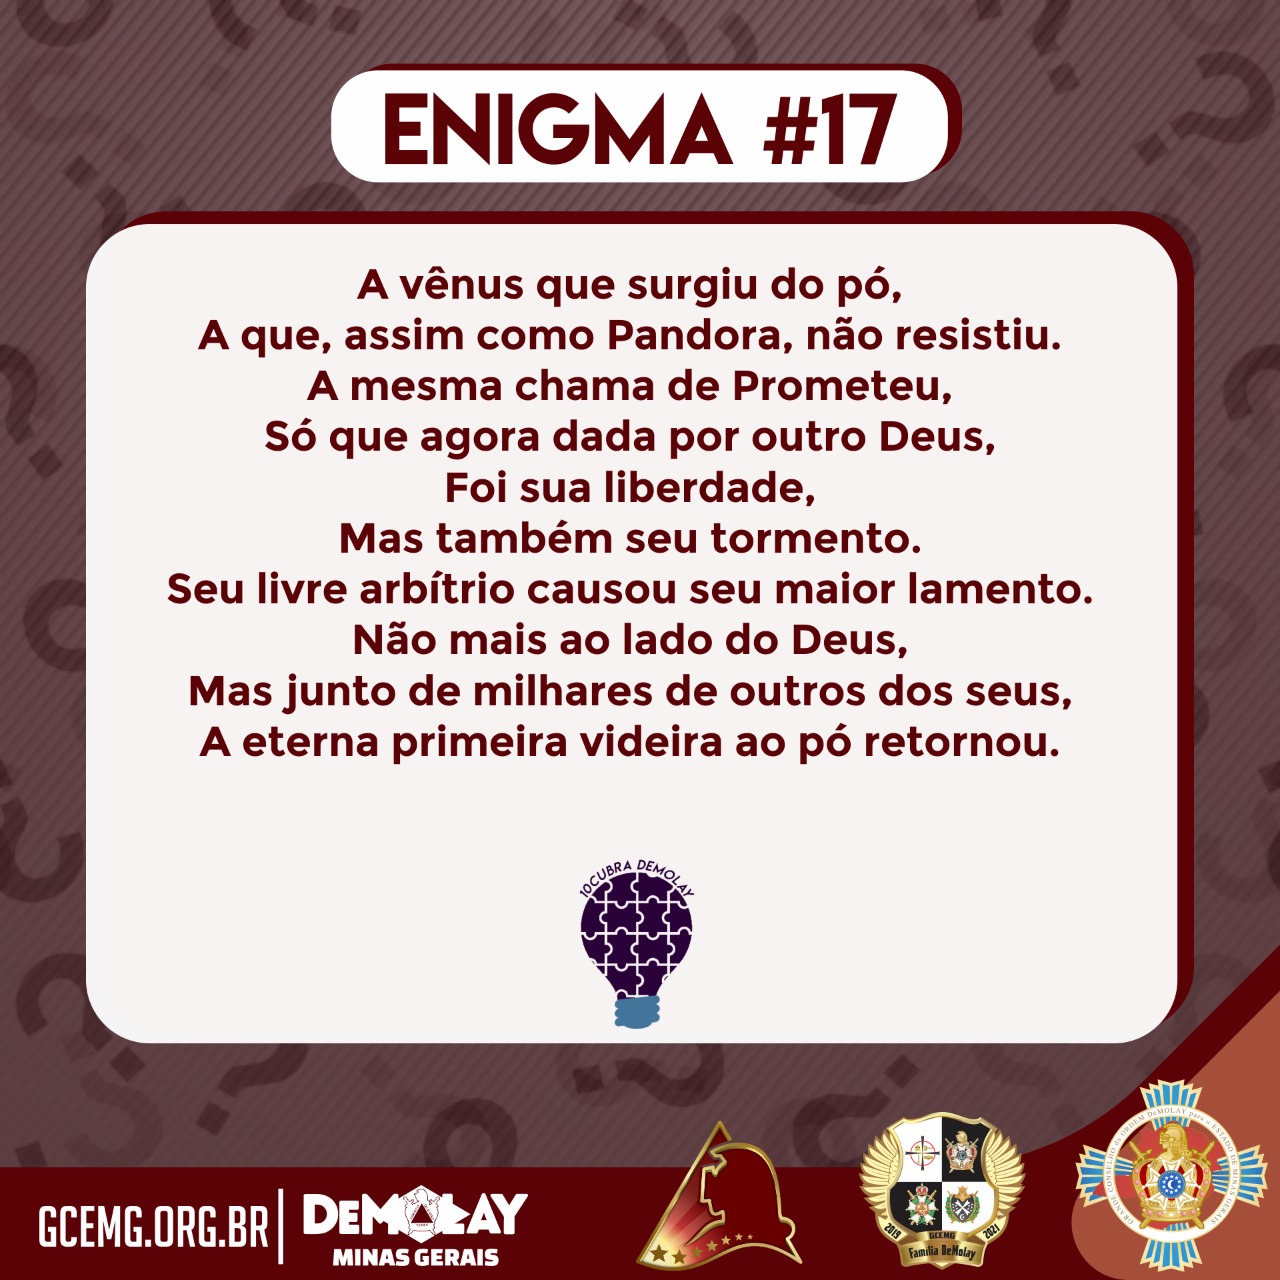 10cubra DeMolay – Enigma #17